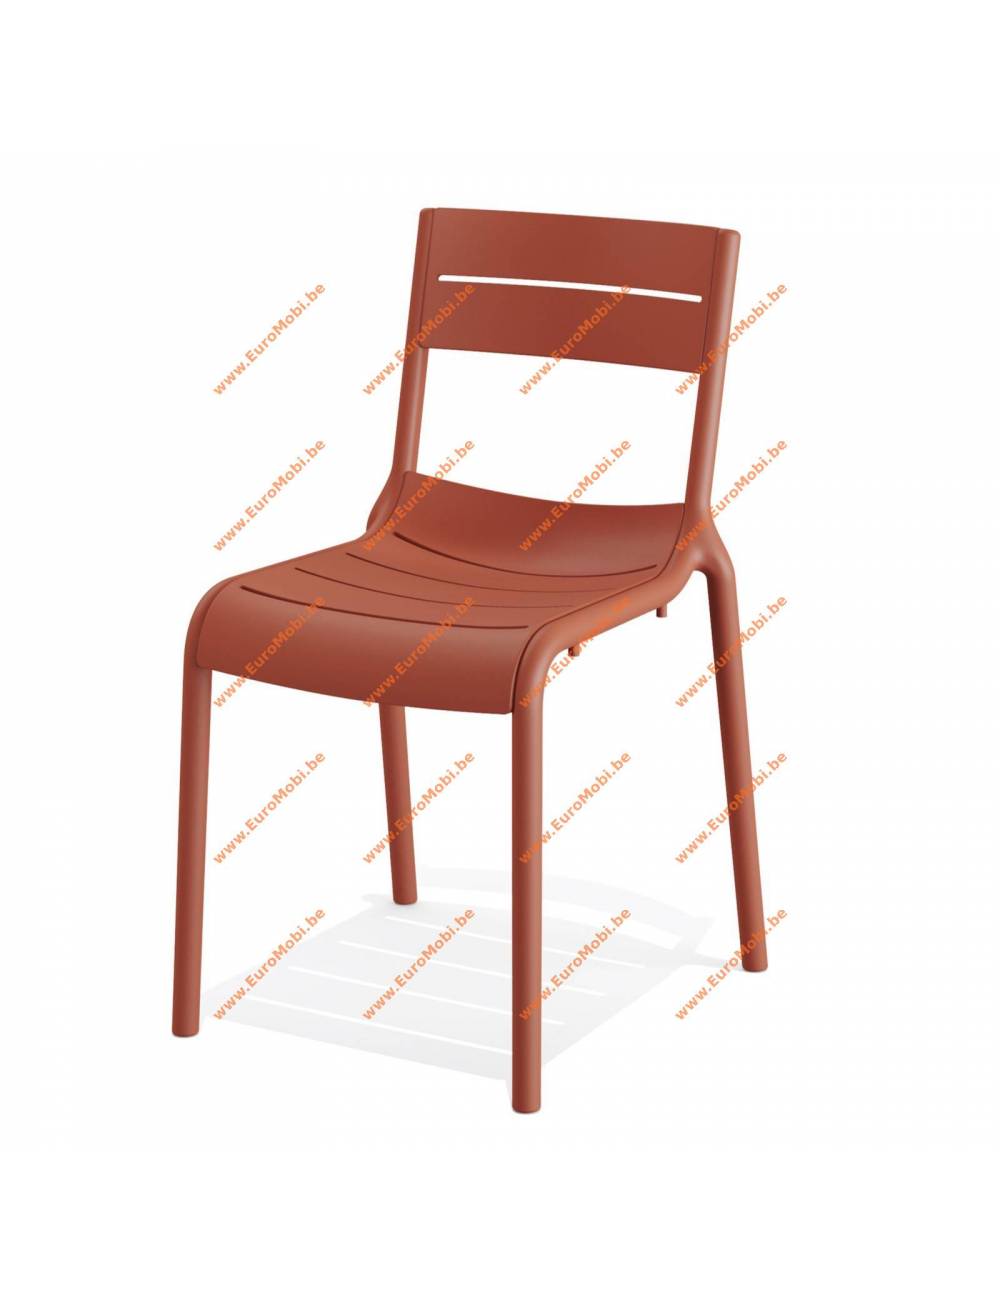 vente - chaise empilable - Calor - couleur Terracotta